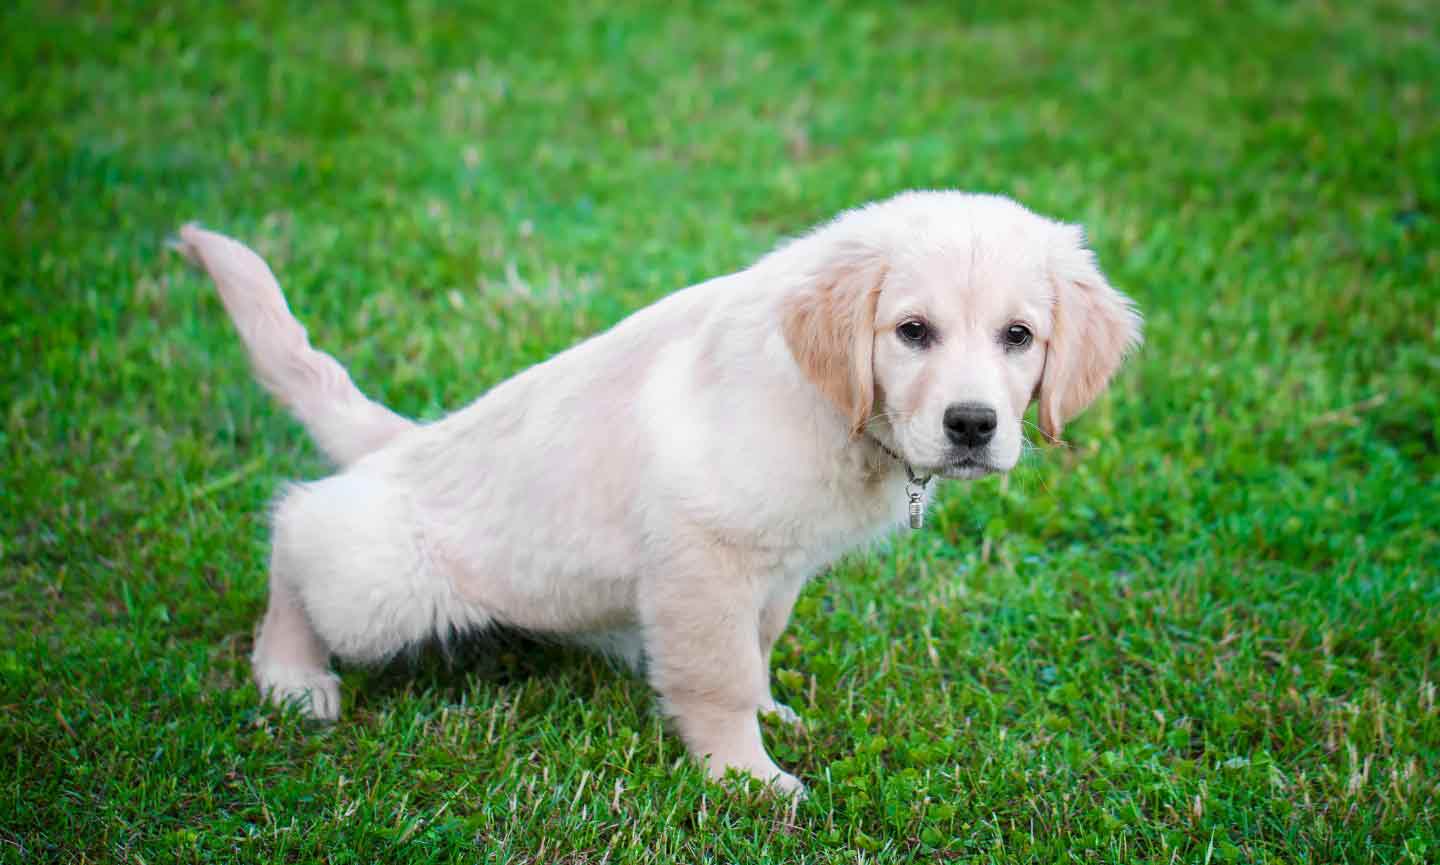 a Golden Retriever puppy going potty on grass